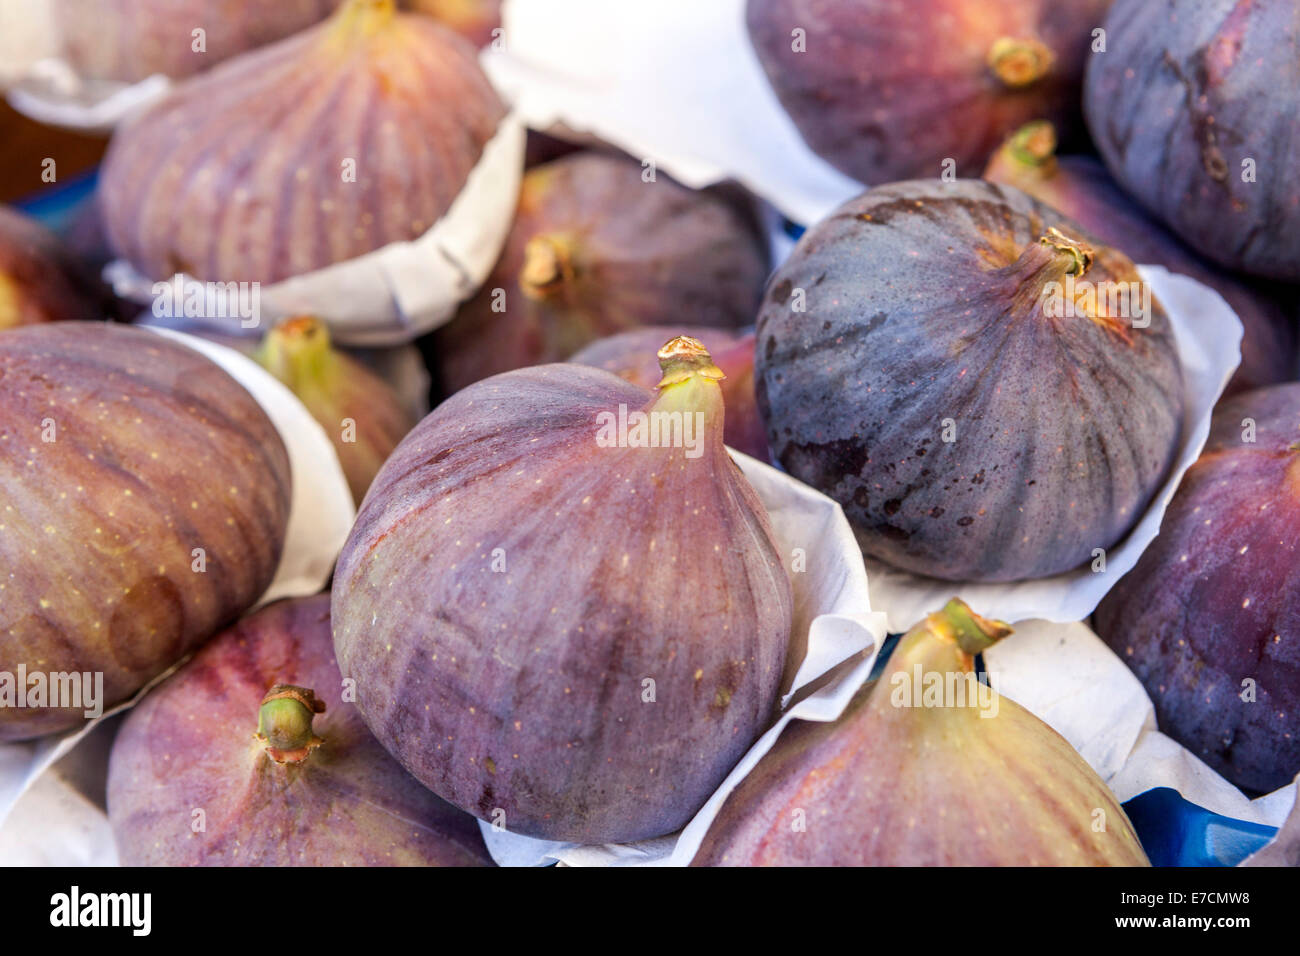 Figs in farmers market. Stock Photo